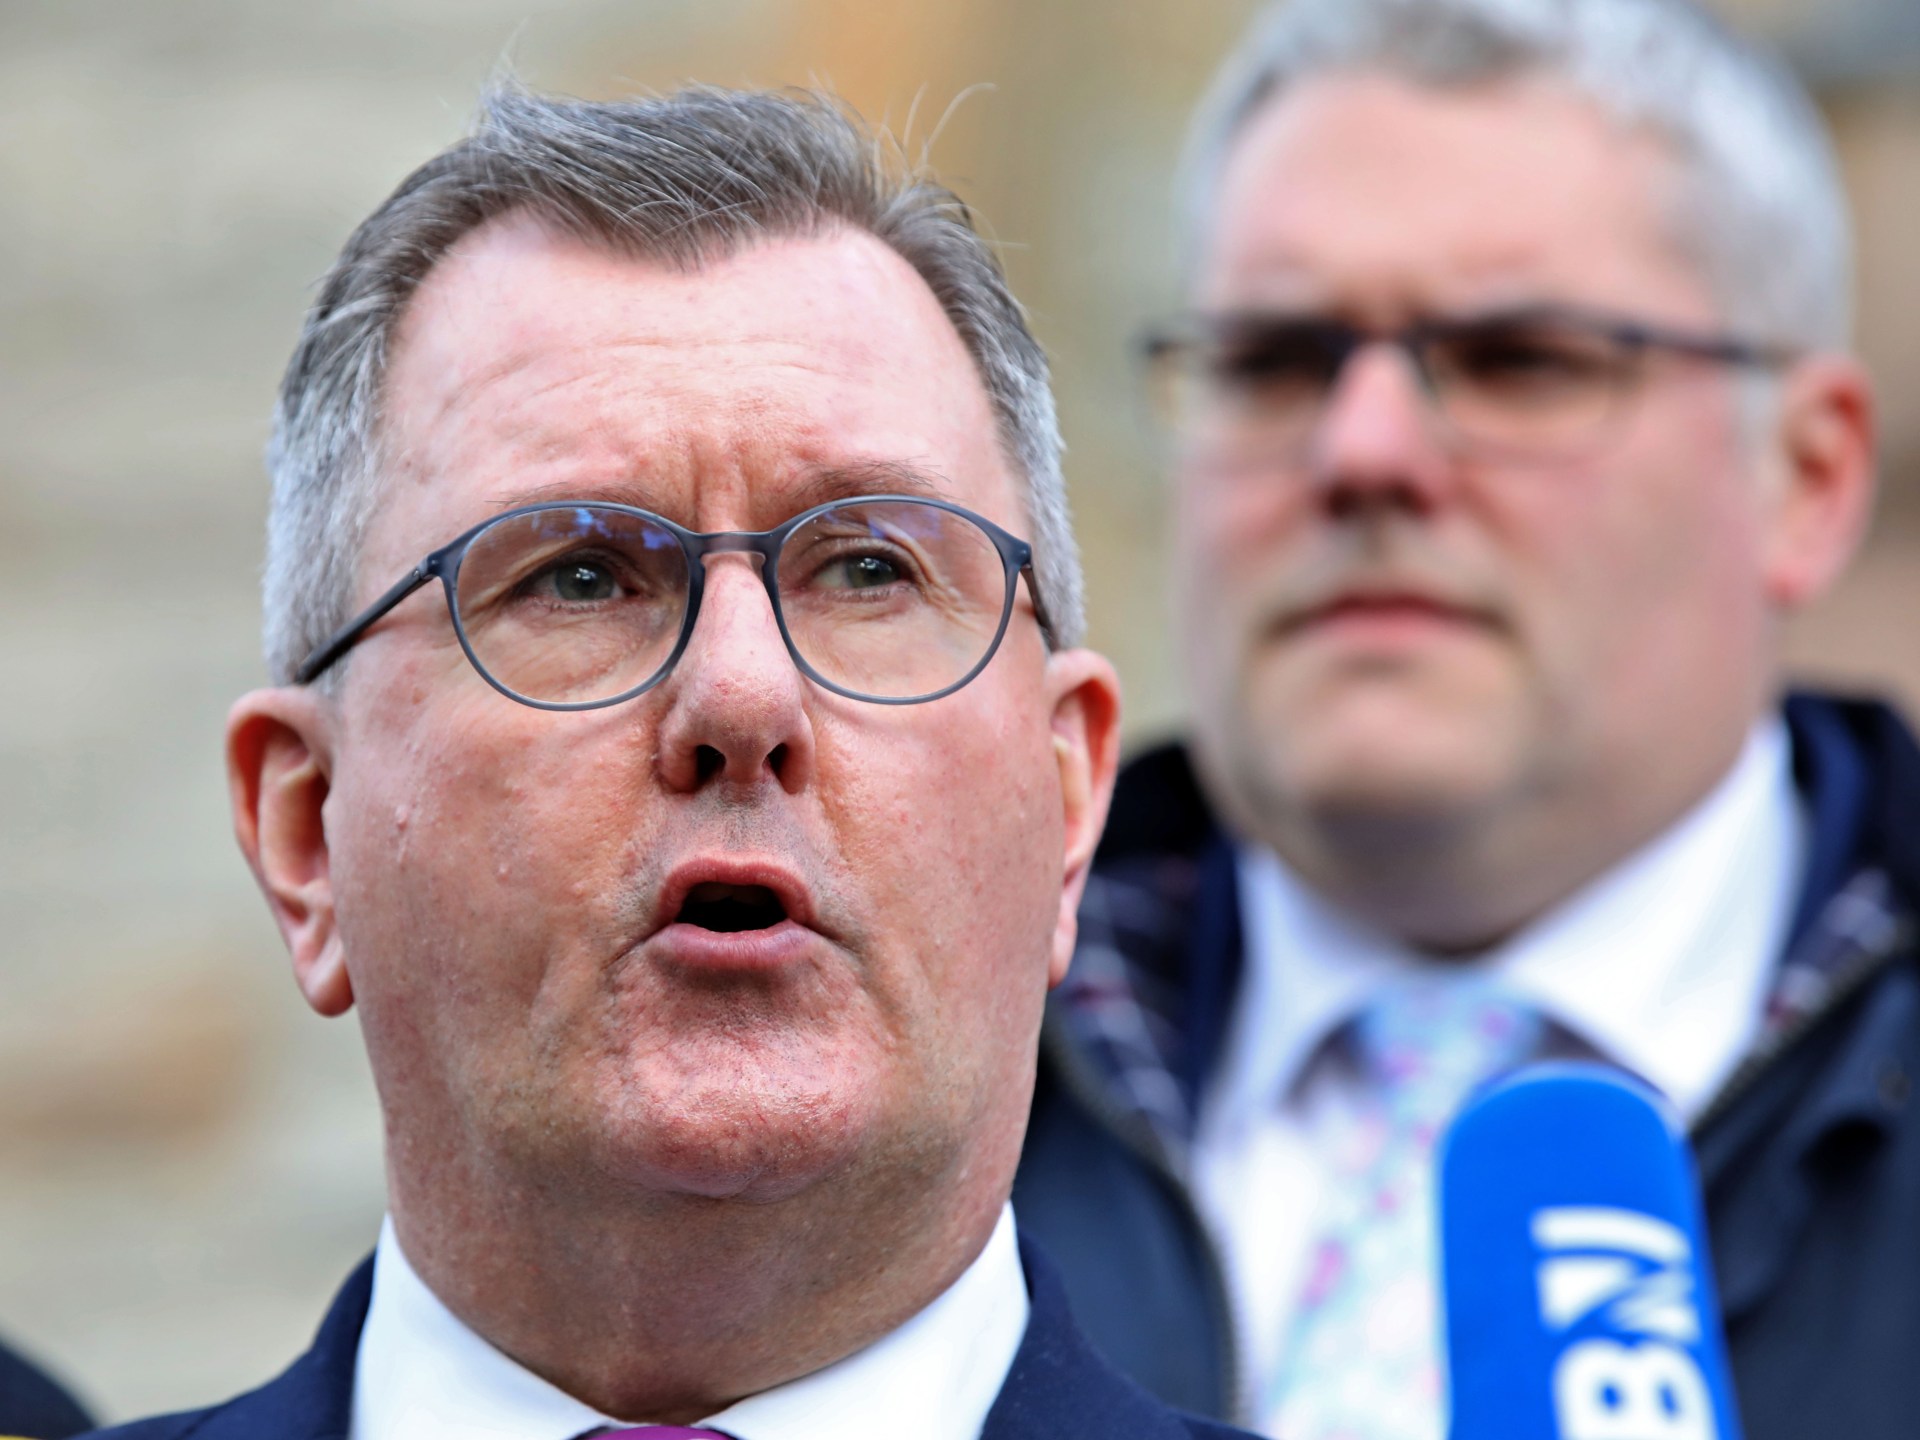 Lãnh đạo DUP Bắc Ireland Geoffrey Donaldson từ chức sau cáo buộc của cảnh sát |  Tin tức chính trị